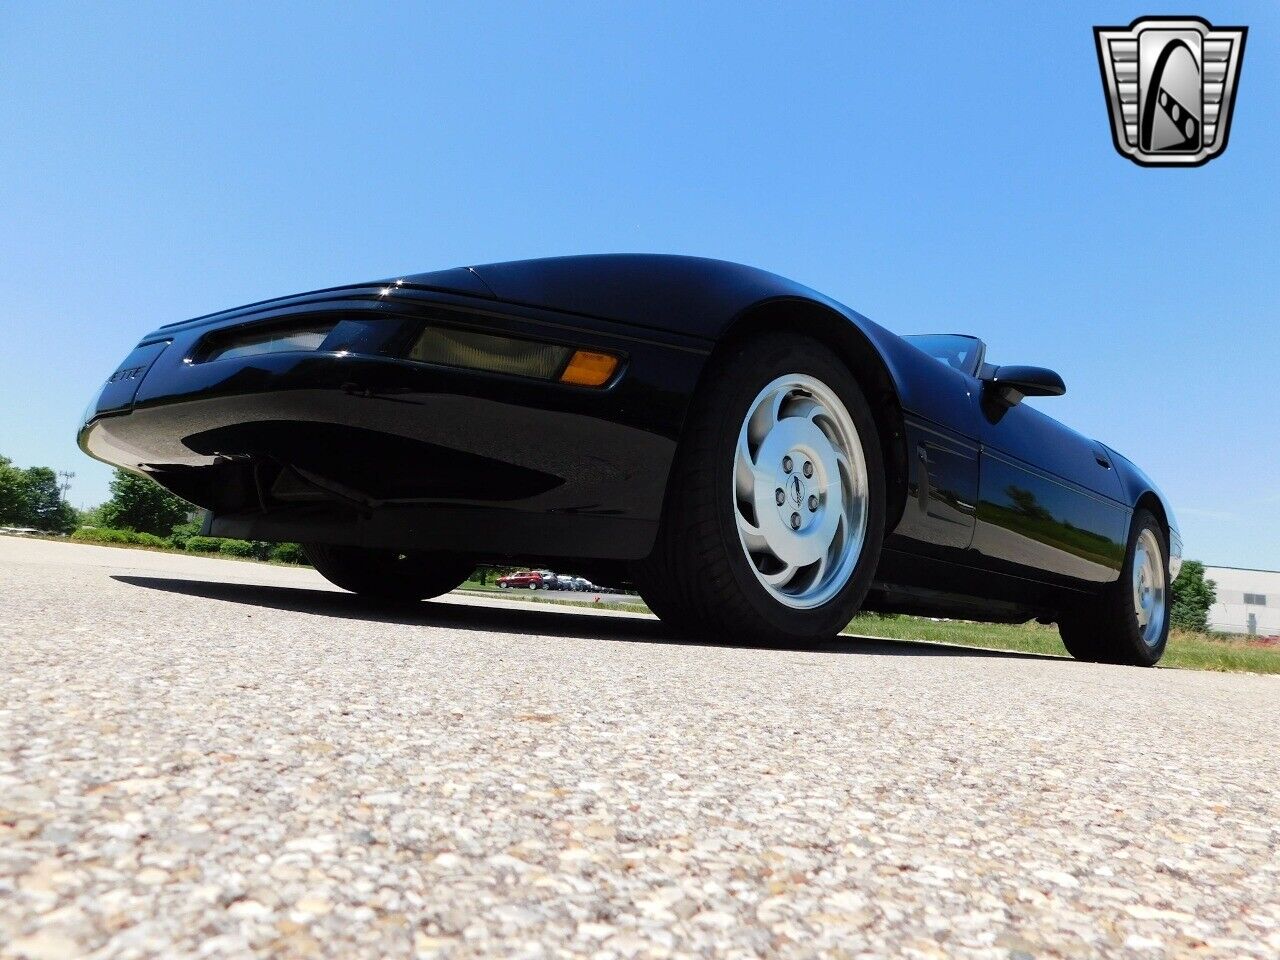 Black 1995 Chevrolet Corvette  5.7 Liter LT1 V8 4 Speed Automatic Available Now!